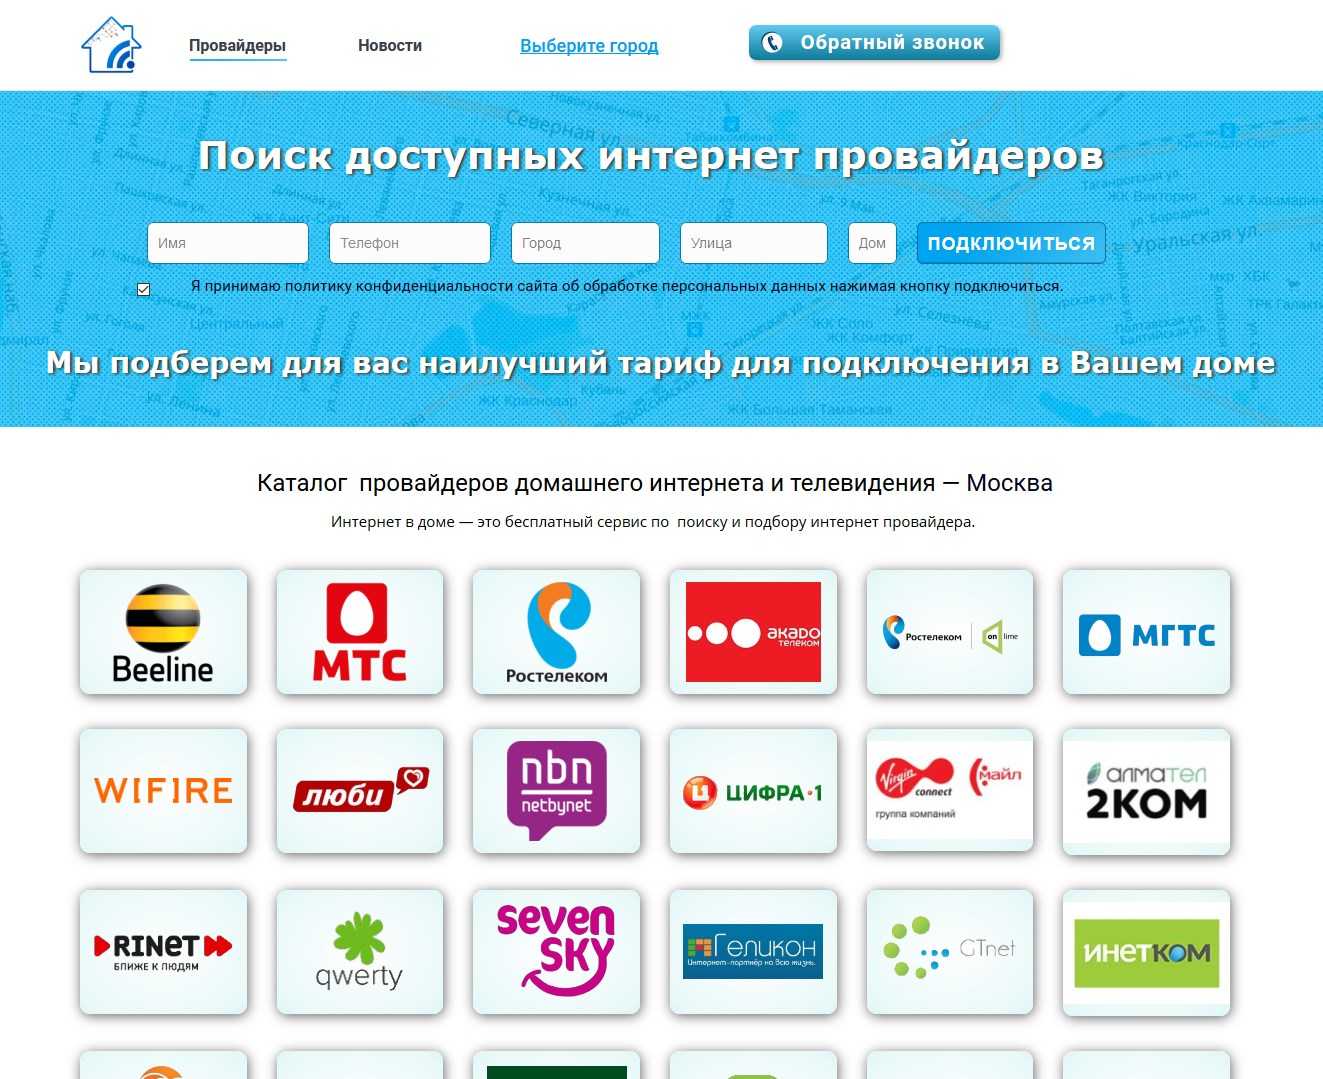 Москва Интернет Магазин Казахстан